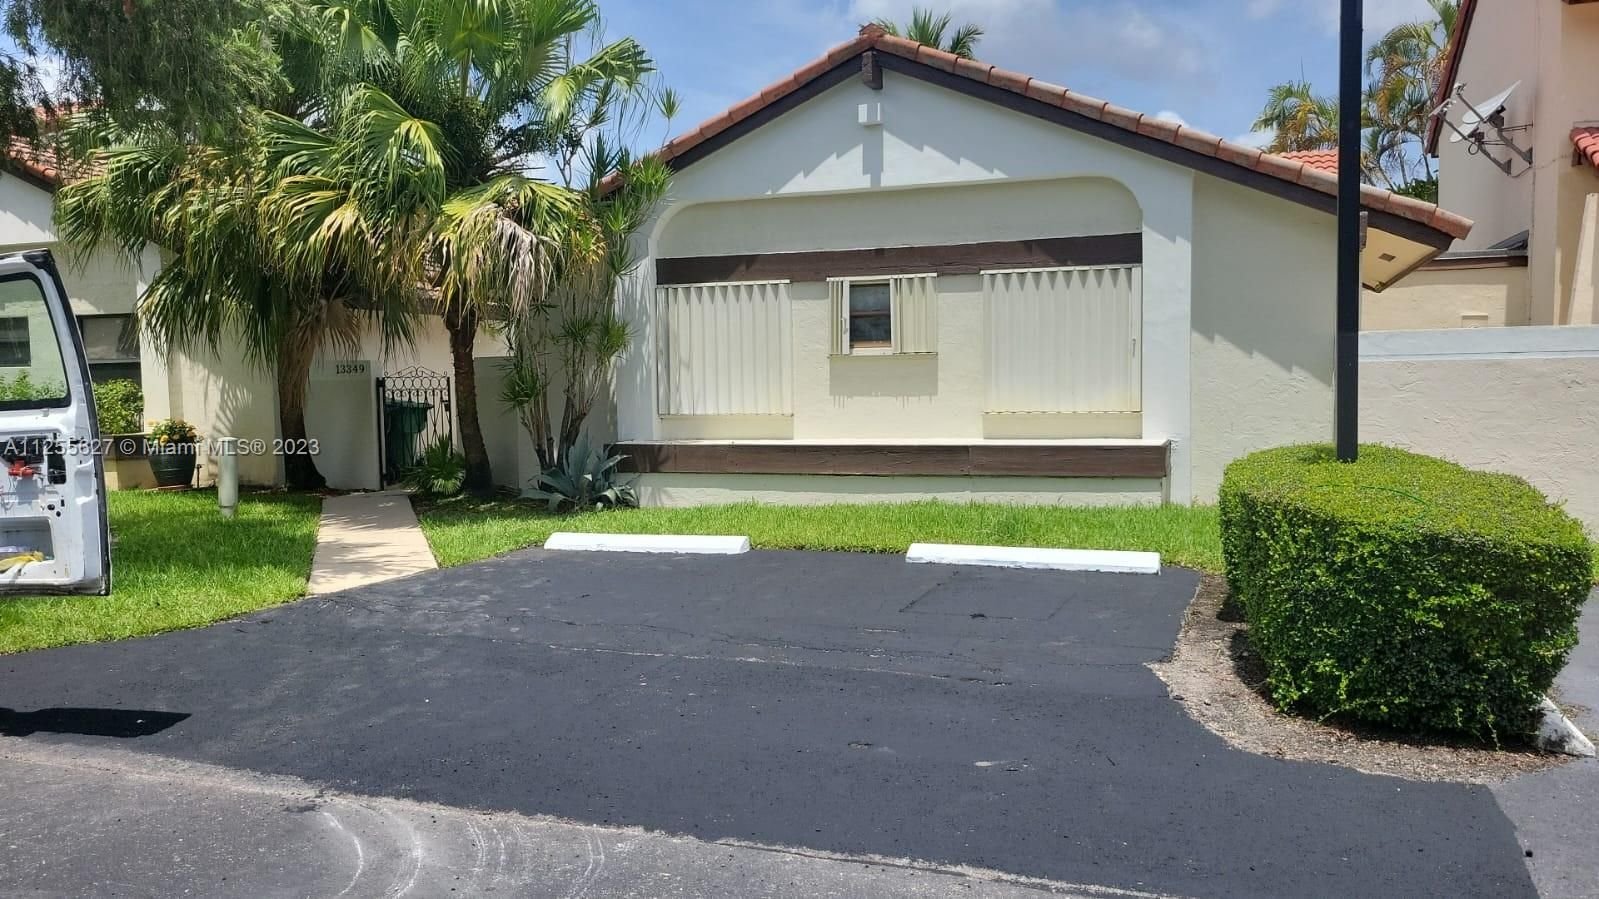 Real estate property located at 13349 64th Ln, Miami-Dade County, Miami, FL